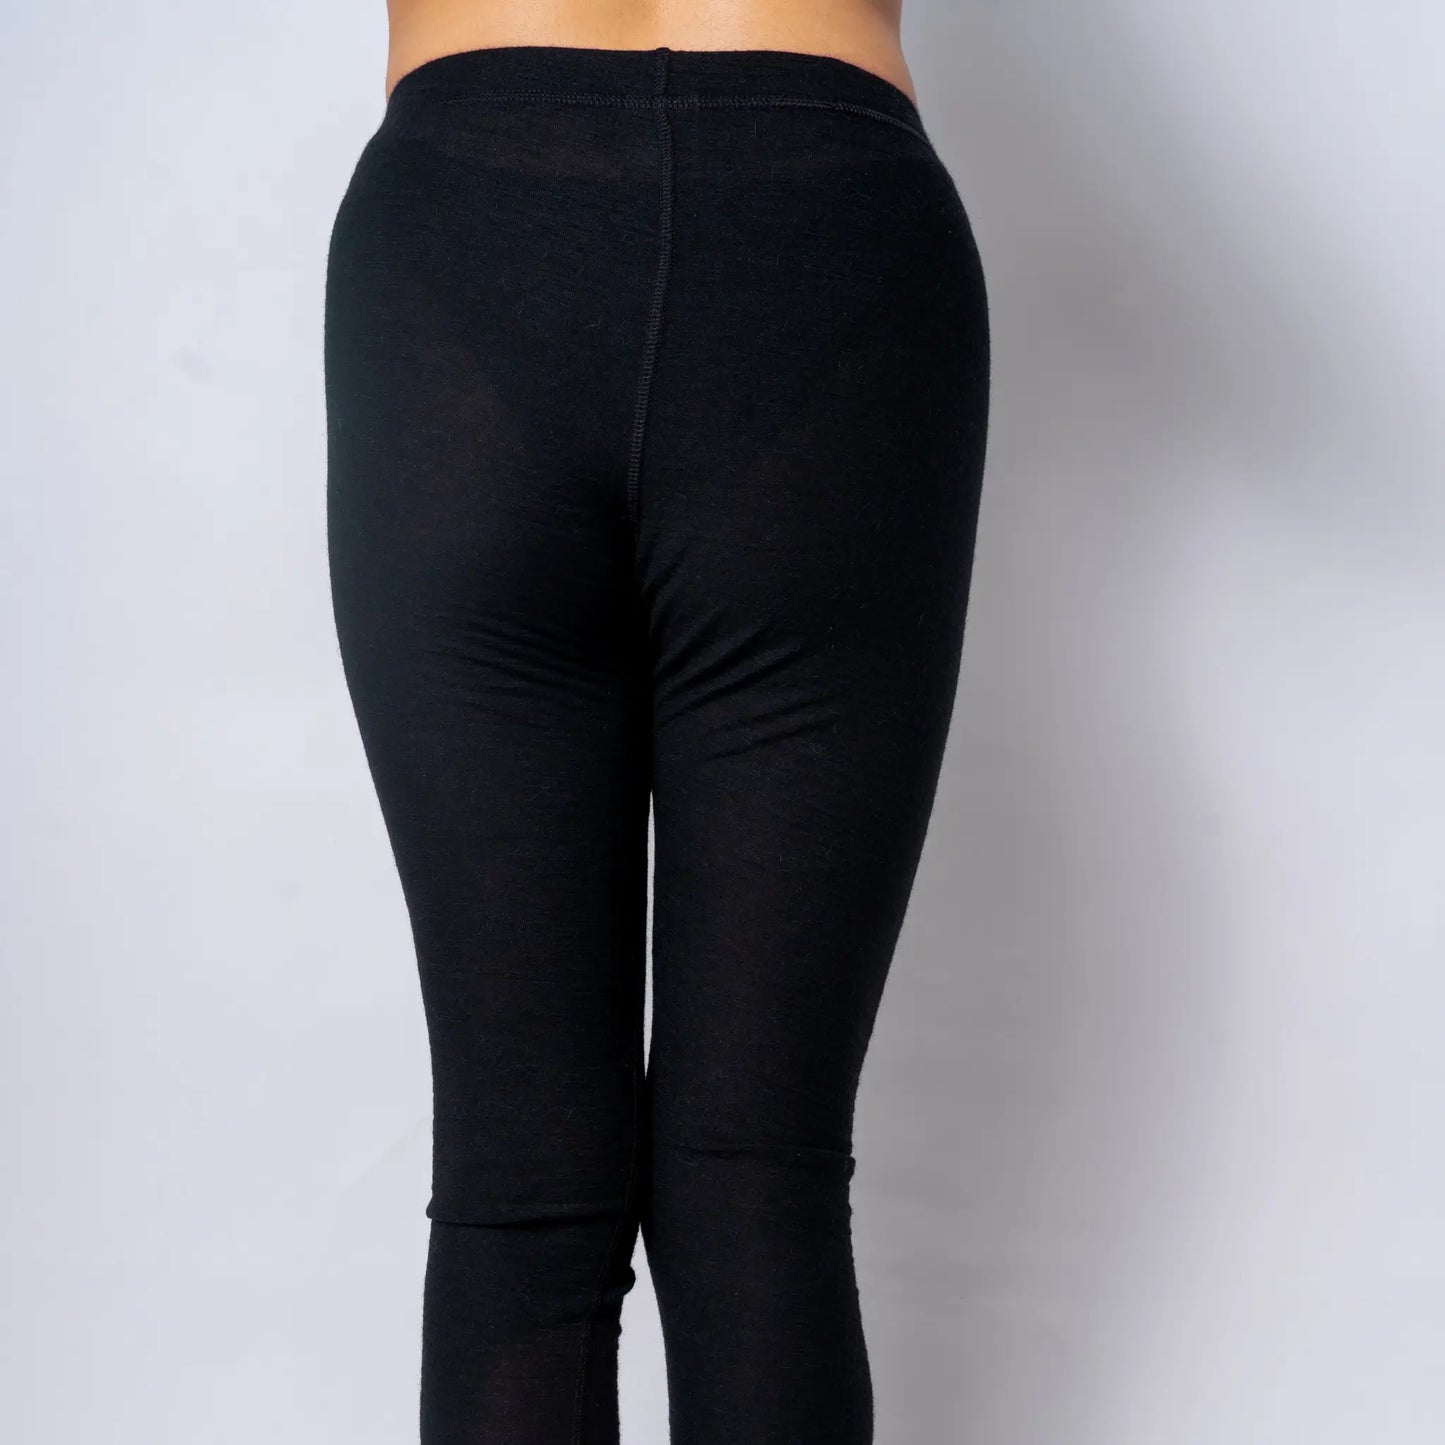 womens leggings ultralight160 breathable color black